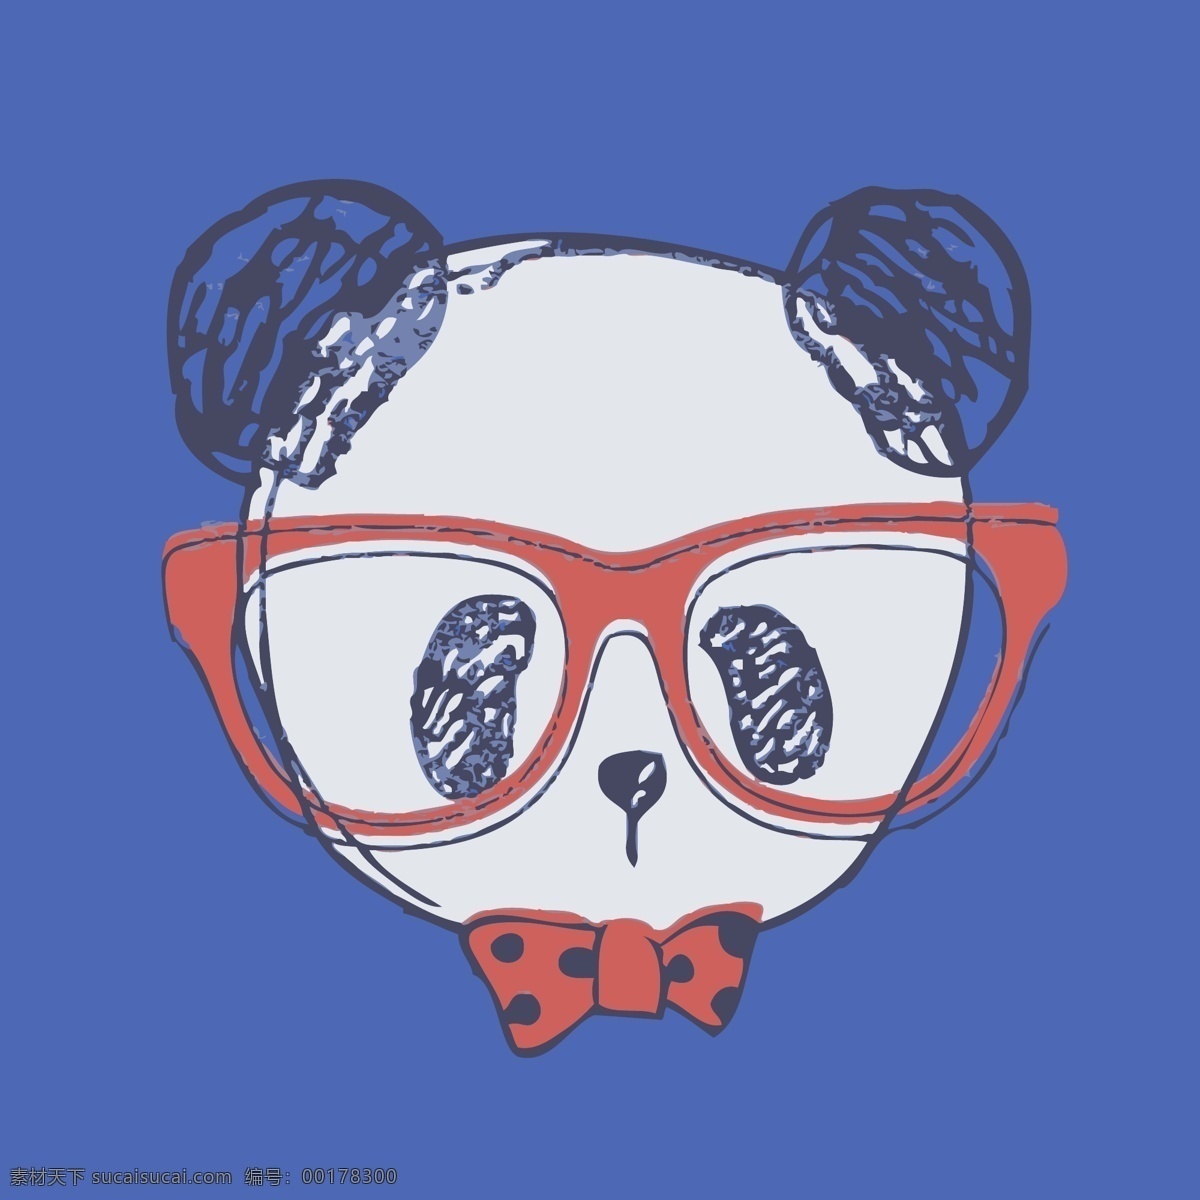 印花 矢量图 动物 服装图案 可爱卡通 熊猫 眼镜 印花矢量图 面料图库 服装设计 图案花型